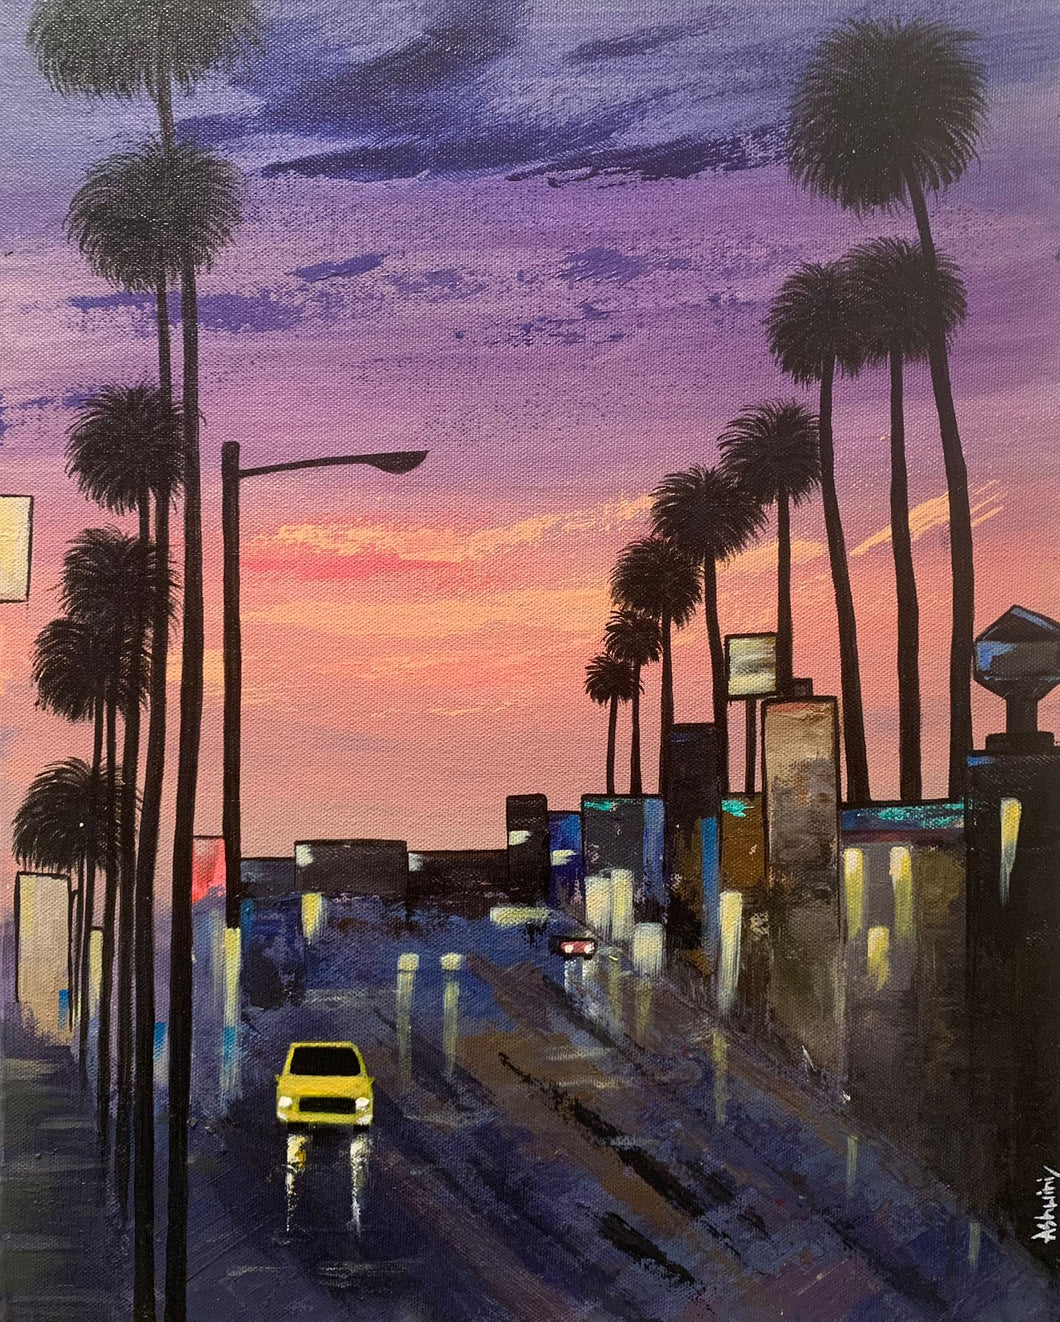 Sunset Street